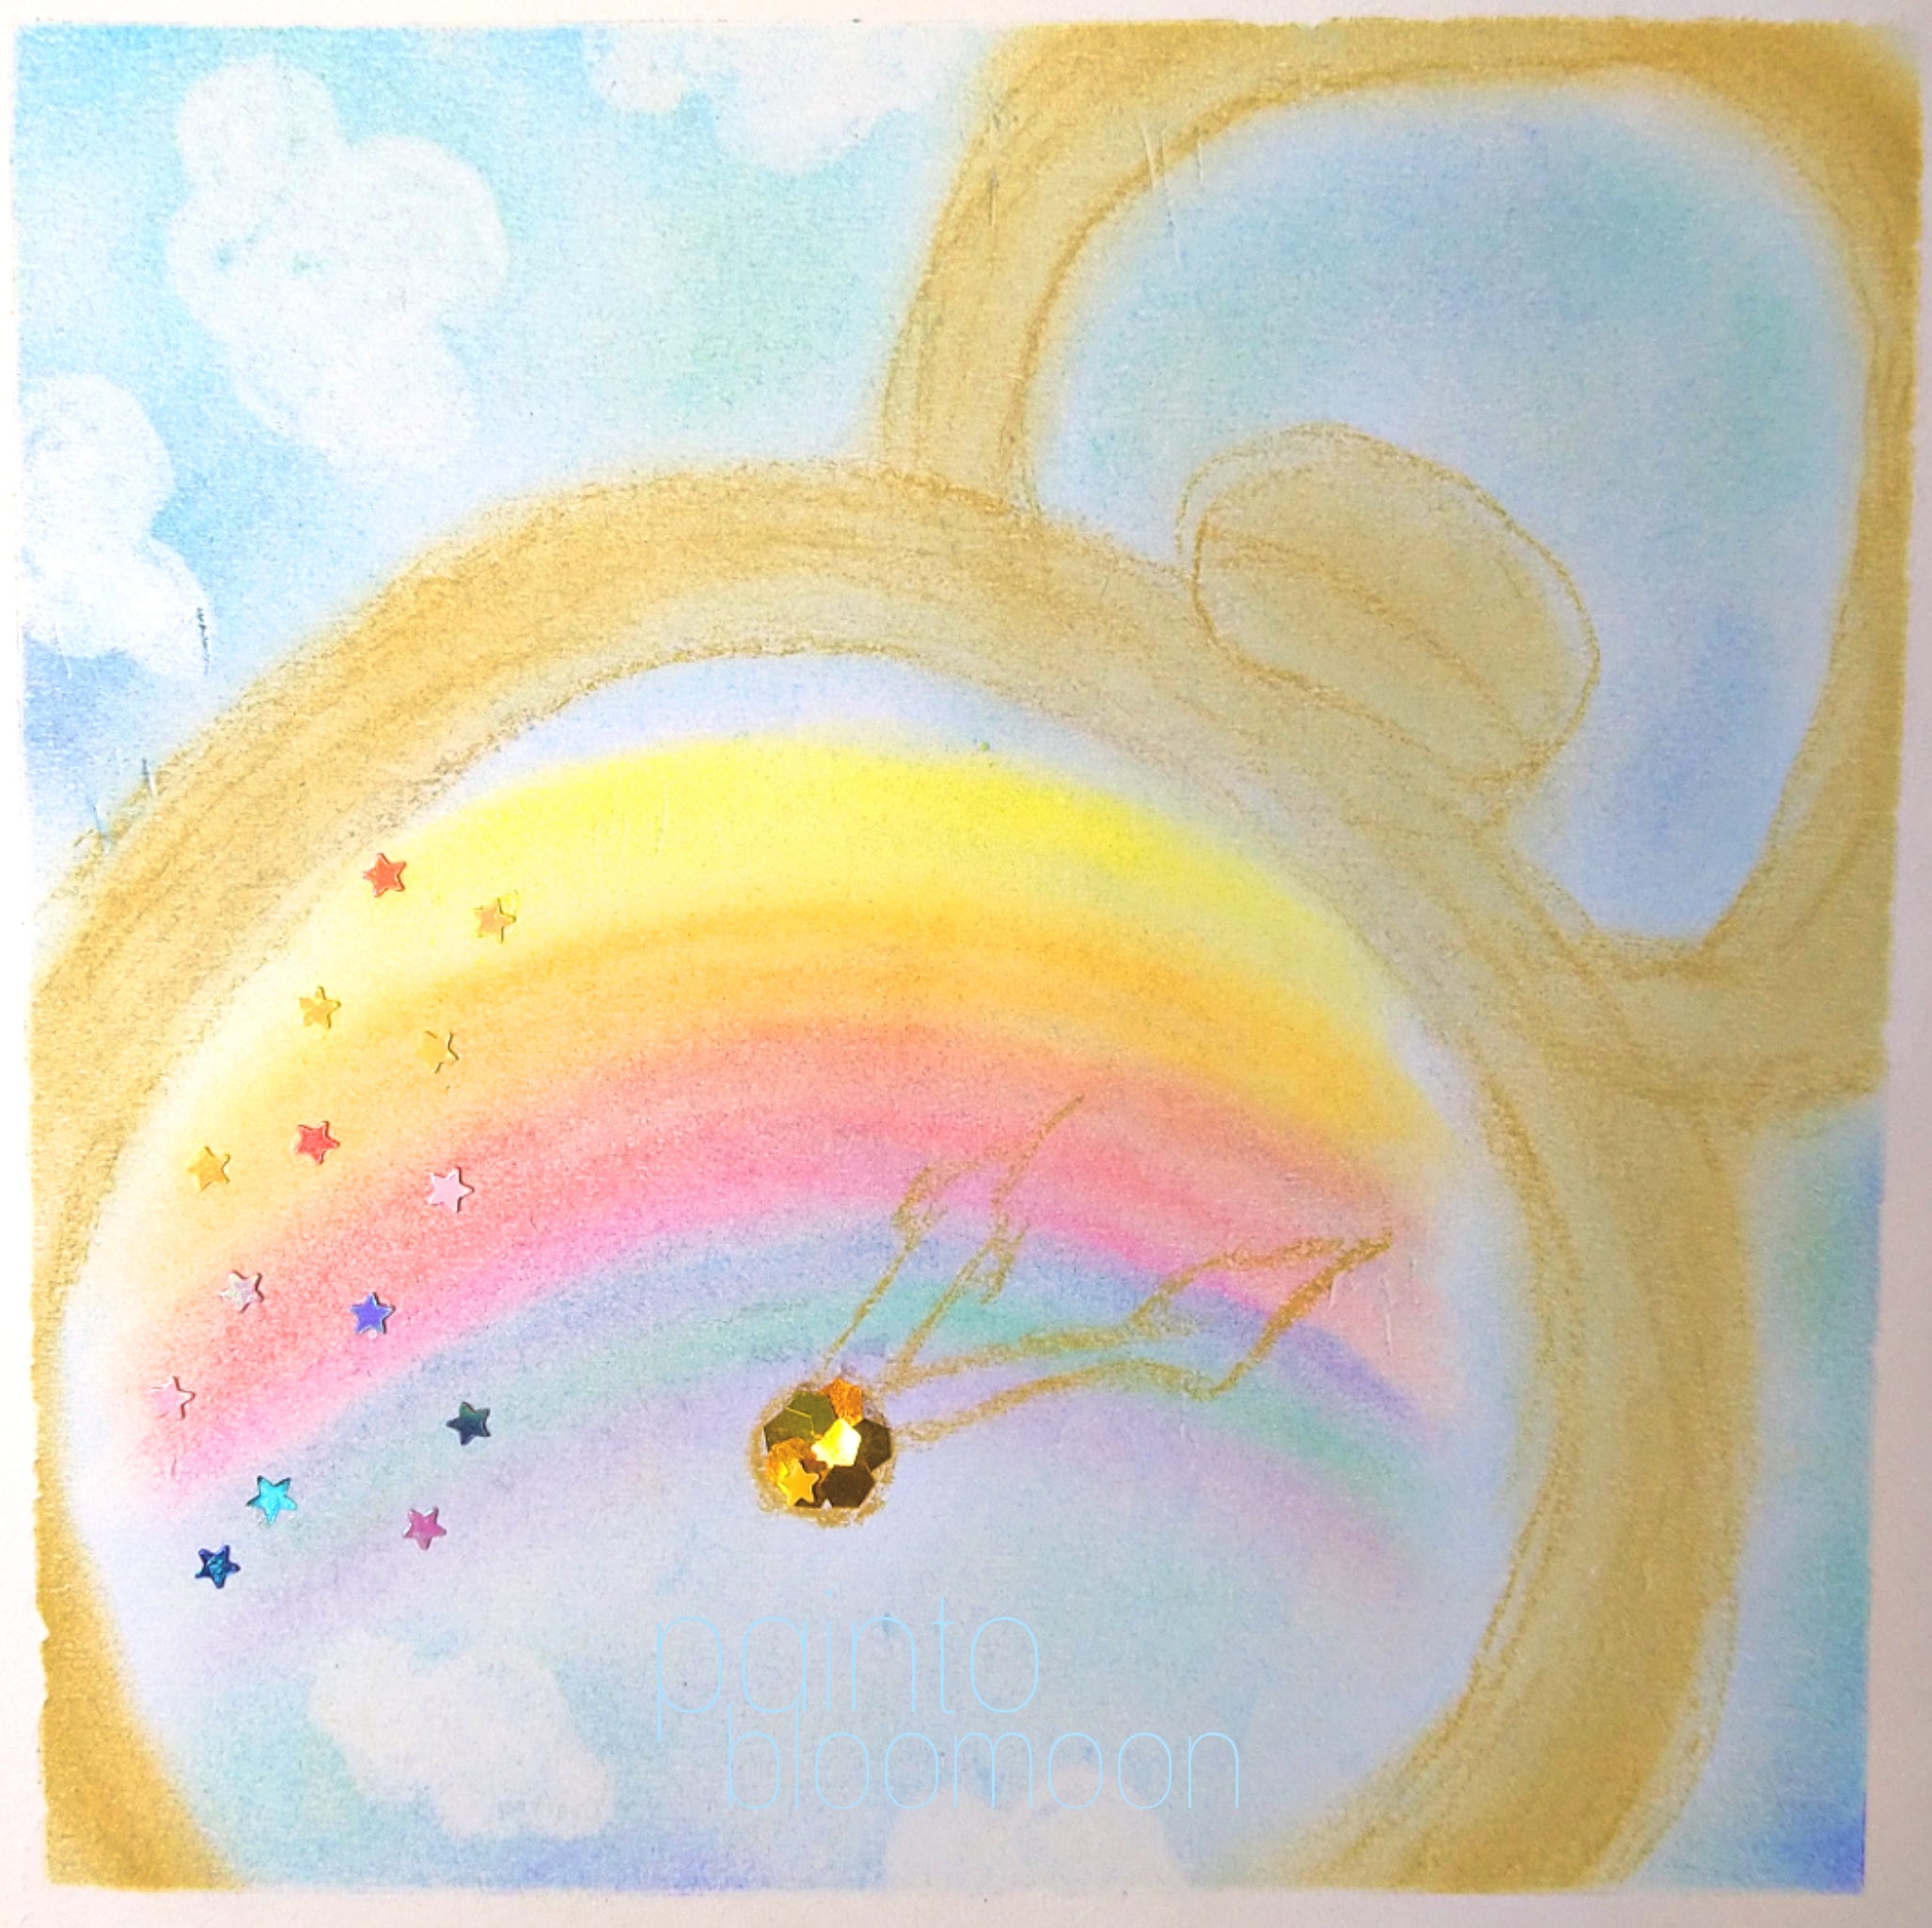 パステルアート 虹と空が映った懐中時計 | painto bloomoon